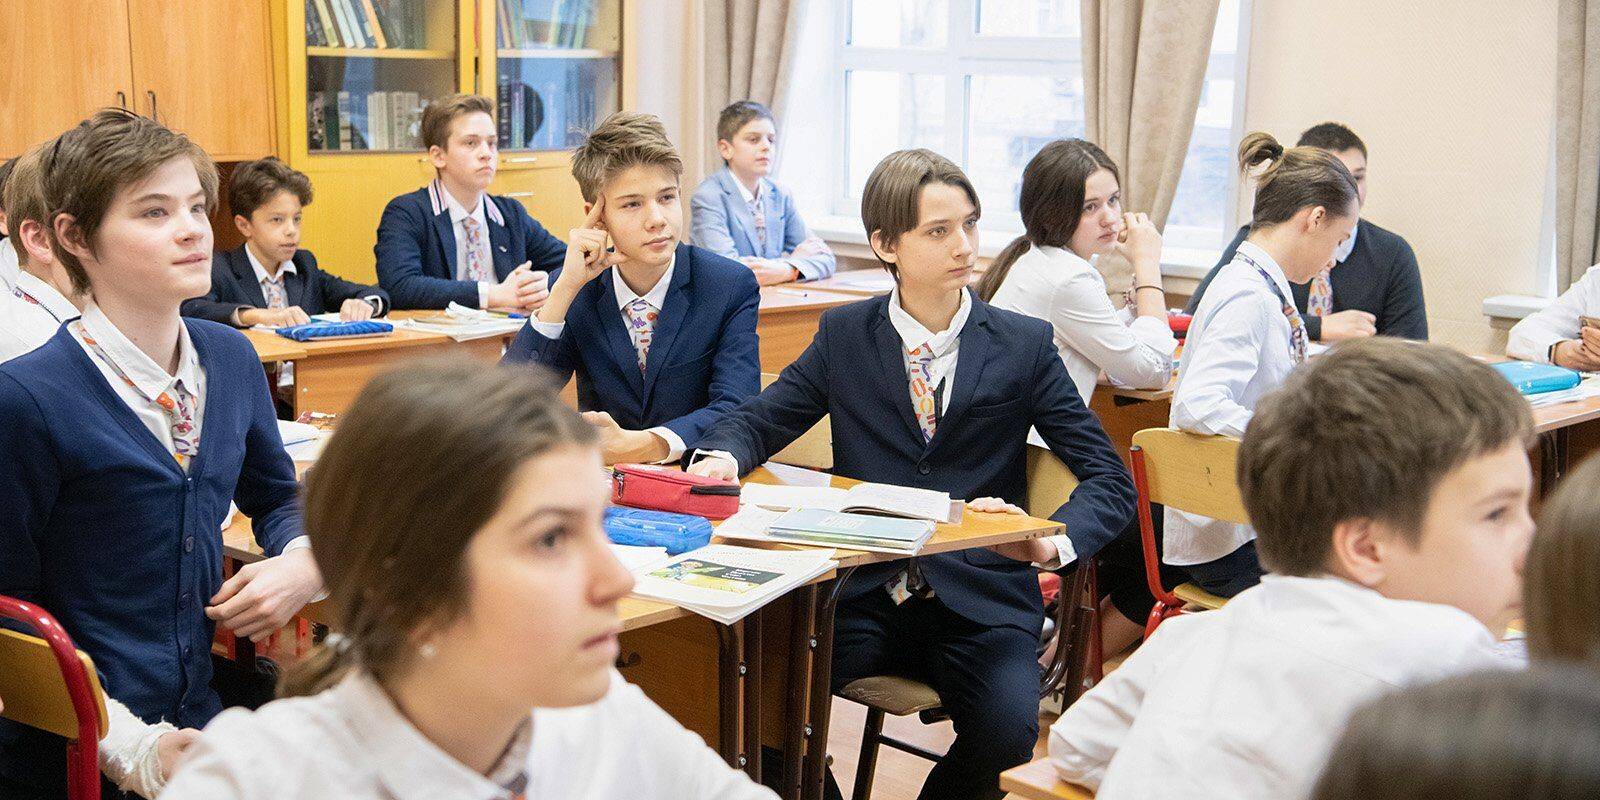 Образование в болгарии для русских и украинцев 2021 году — все о визах и эмиграции